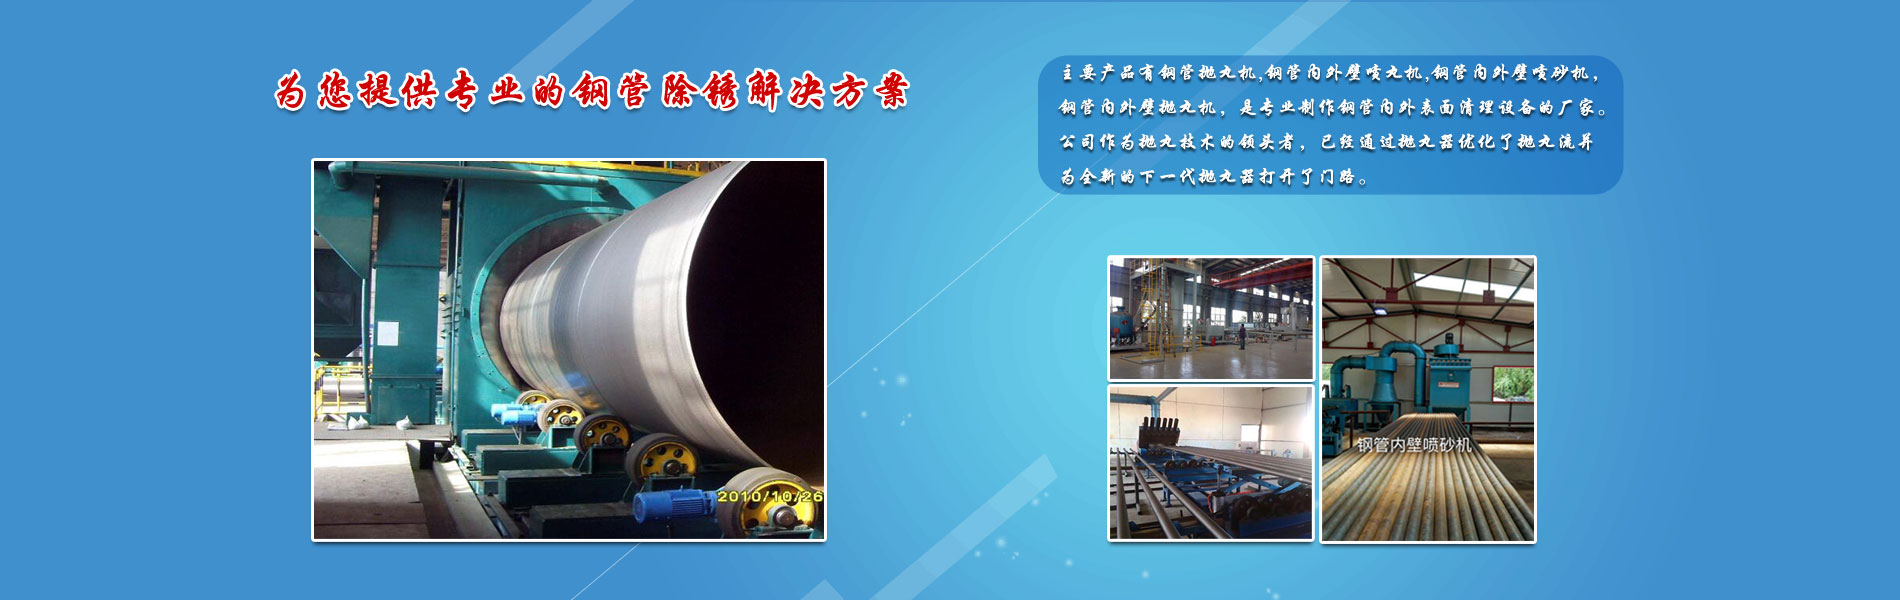 青岛泰丰机械制造有限公司专业从事钢管除锈设备生产的厂家